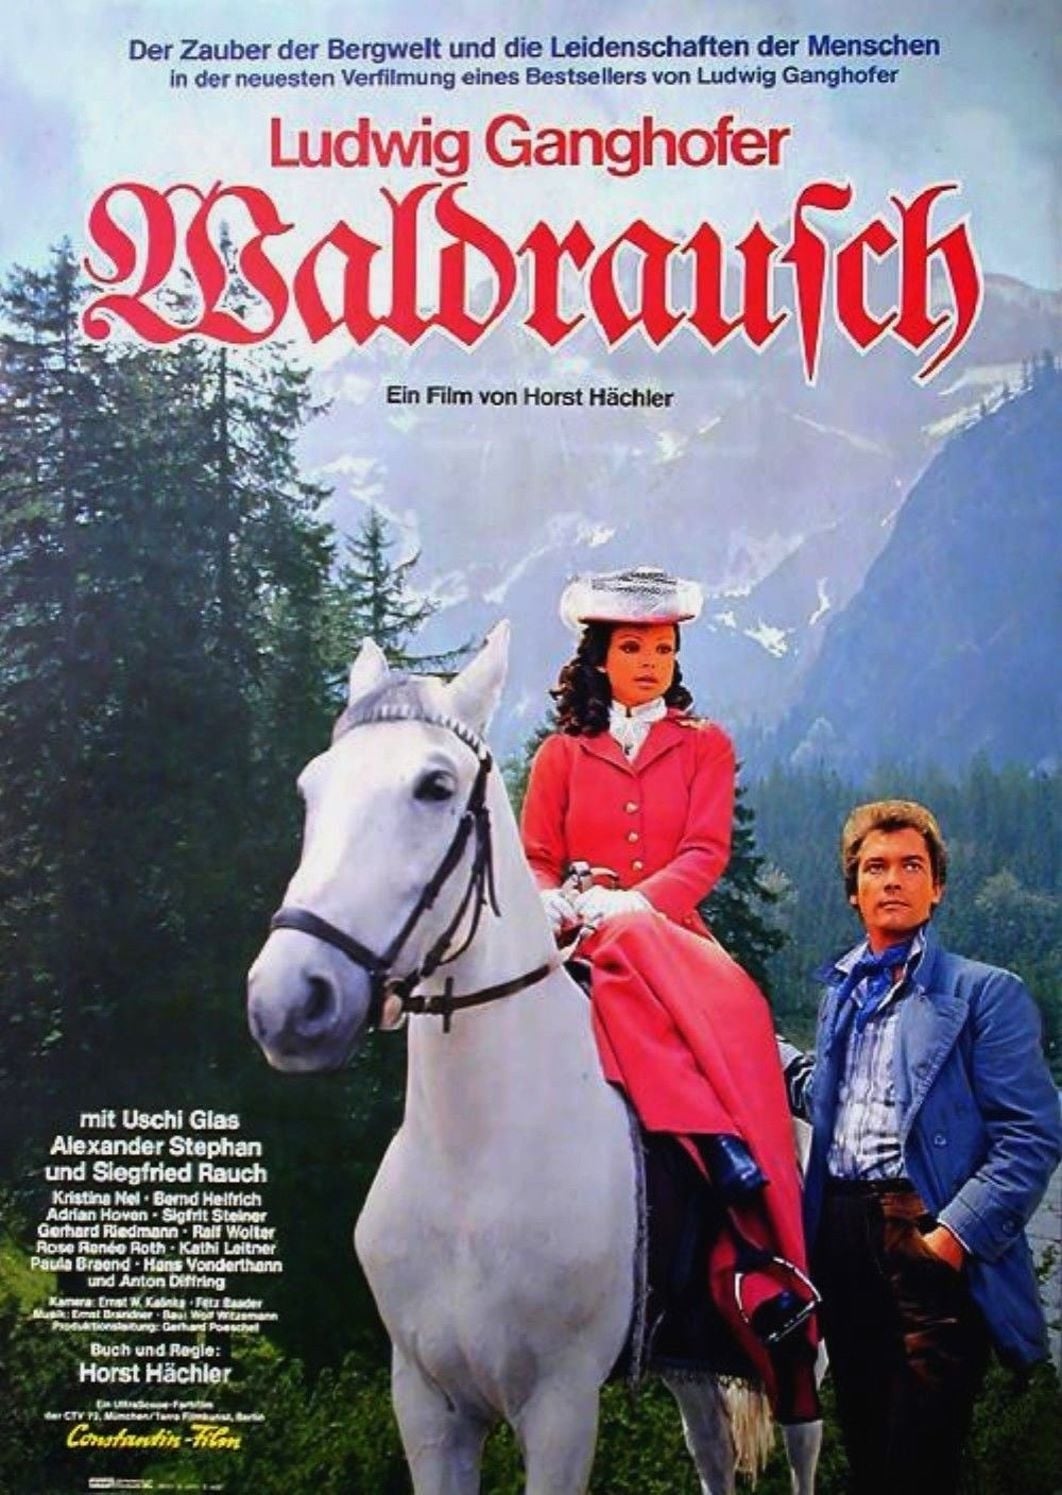 Waldrausch (1977)